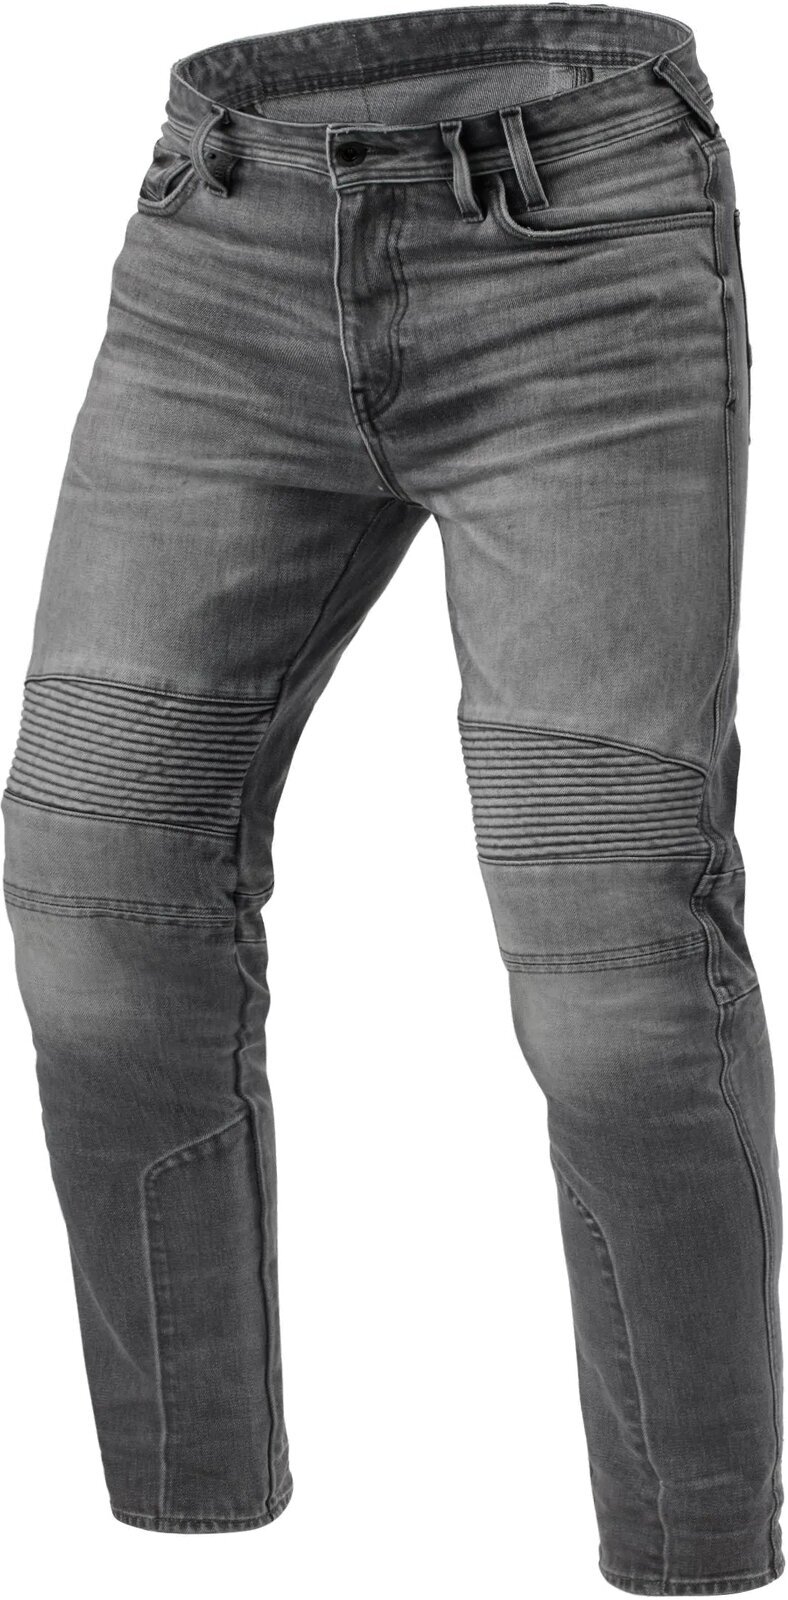 Motoristične jeans hlače Rev'it! Jeans Moto 2 TF Medium Grey 32/31 Motoristične jeans hlače